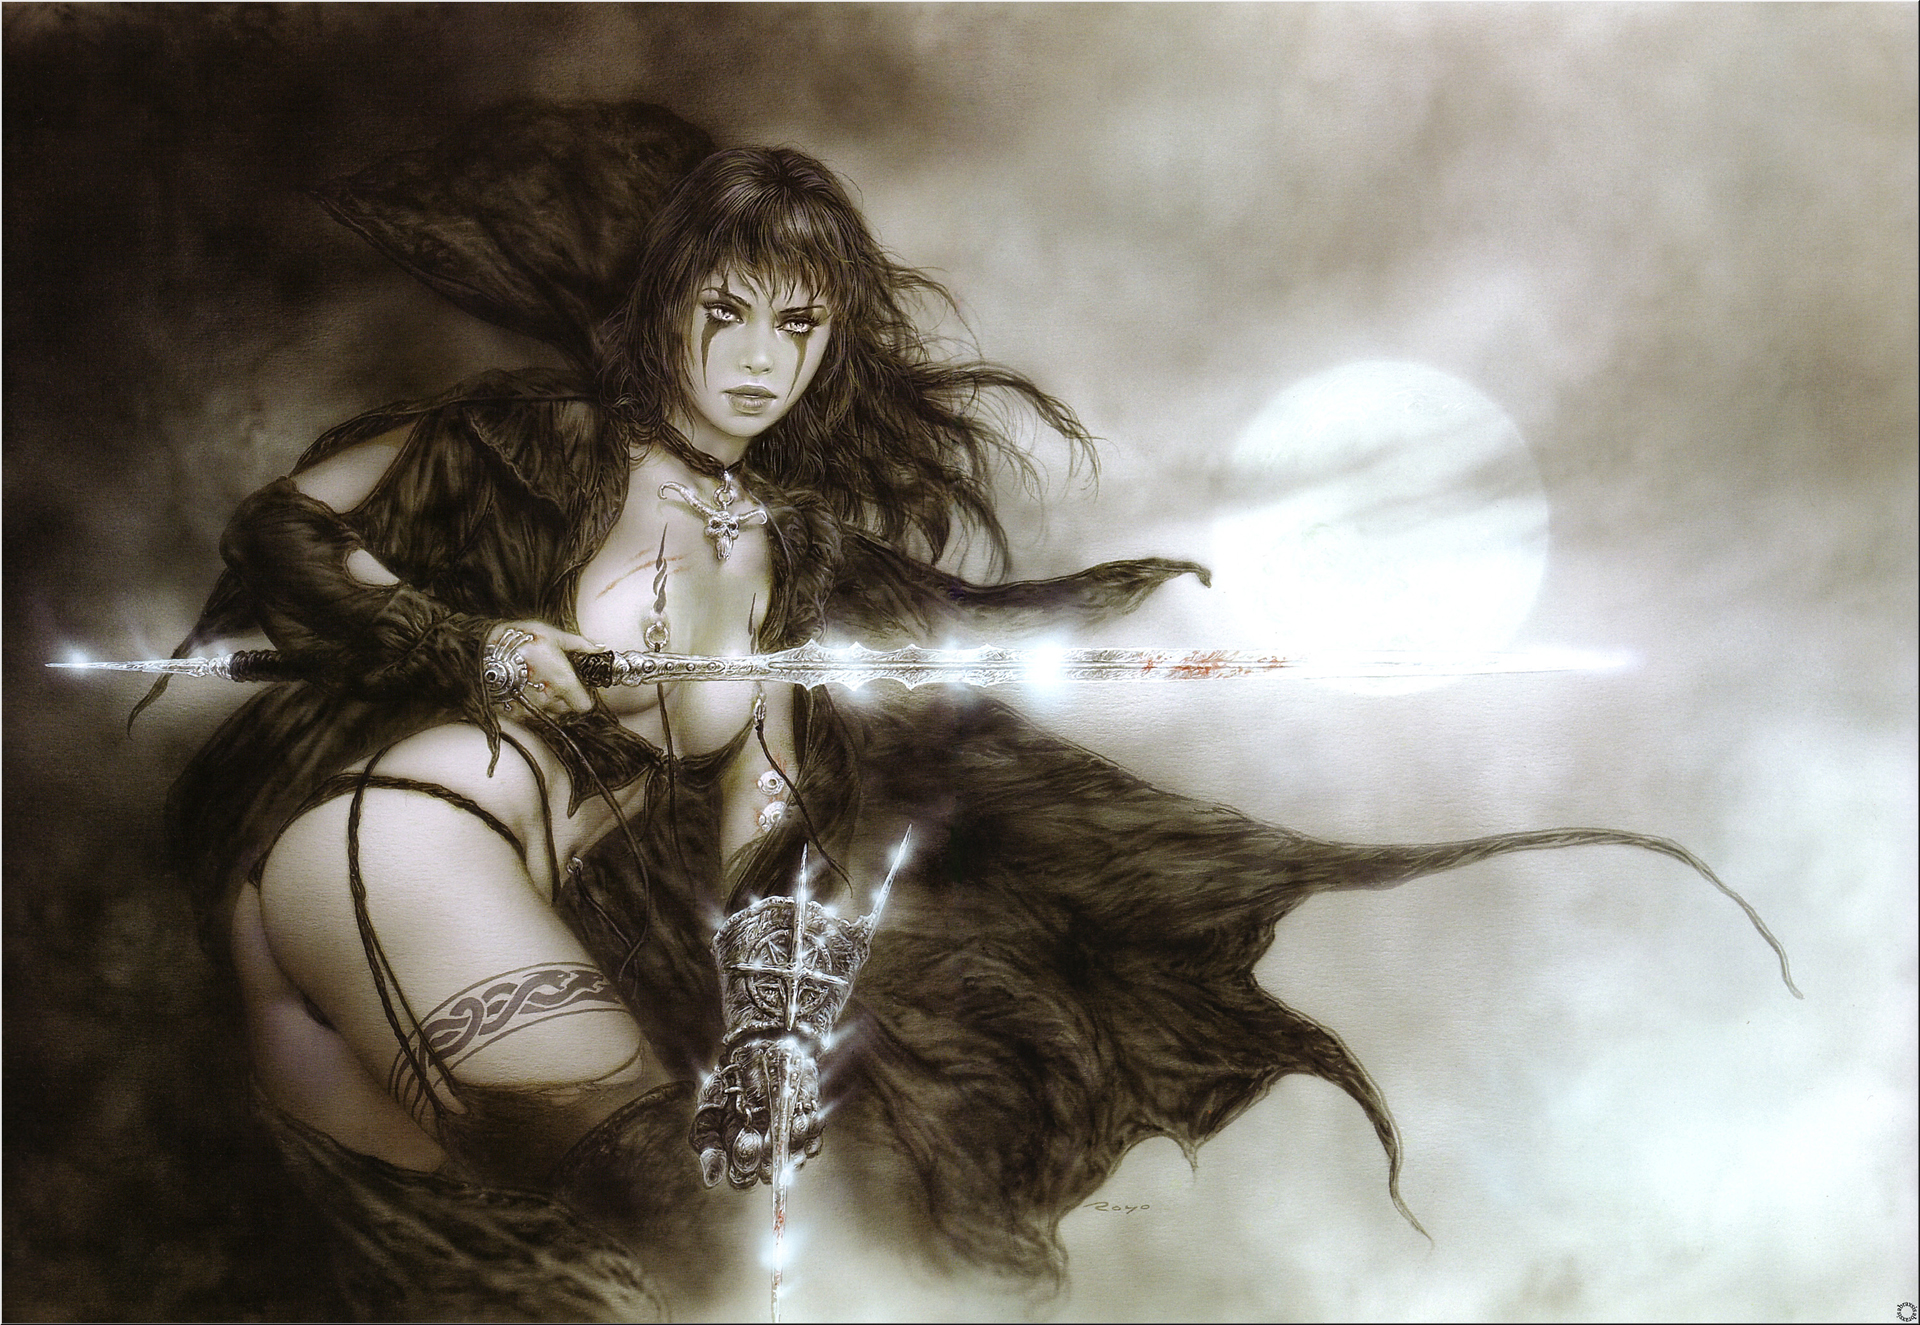 women warrior Luis royo fantasy art